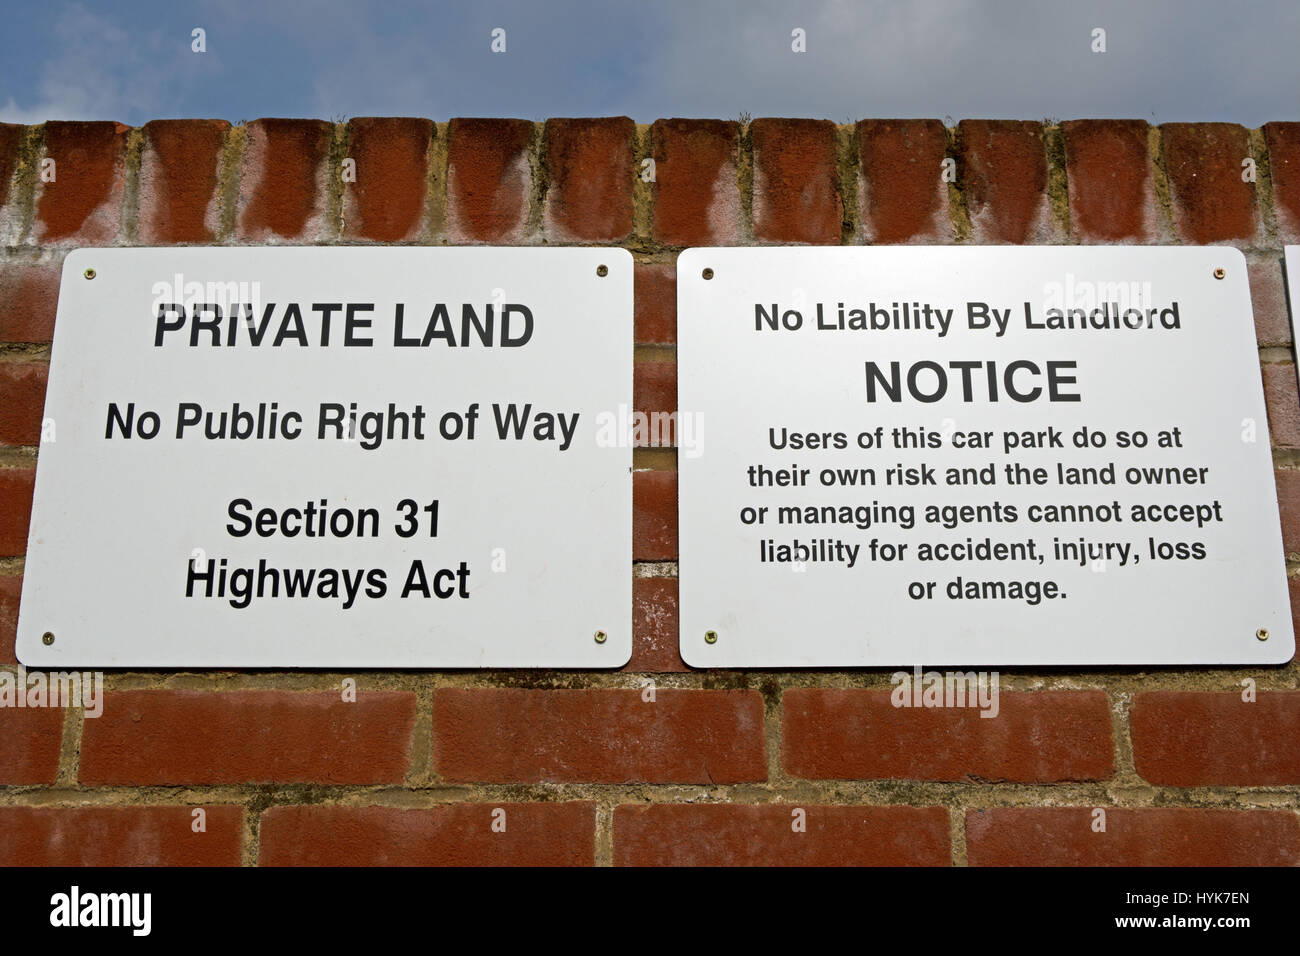 Señales indicando las tierras privadas, ningún derecho de vía pública, Sección 31 de la ley de autopistas, y ninguna responsabilidad por el propietario del aparcamiento Foto de stock